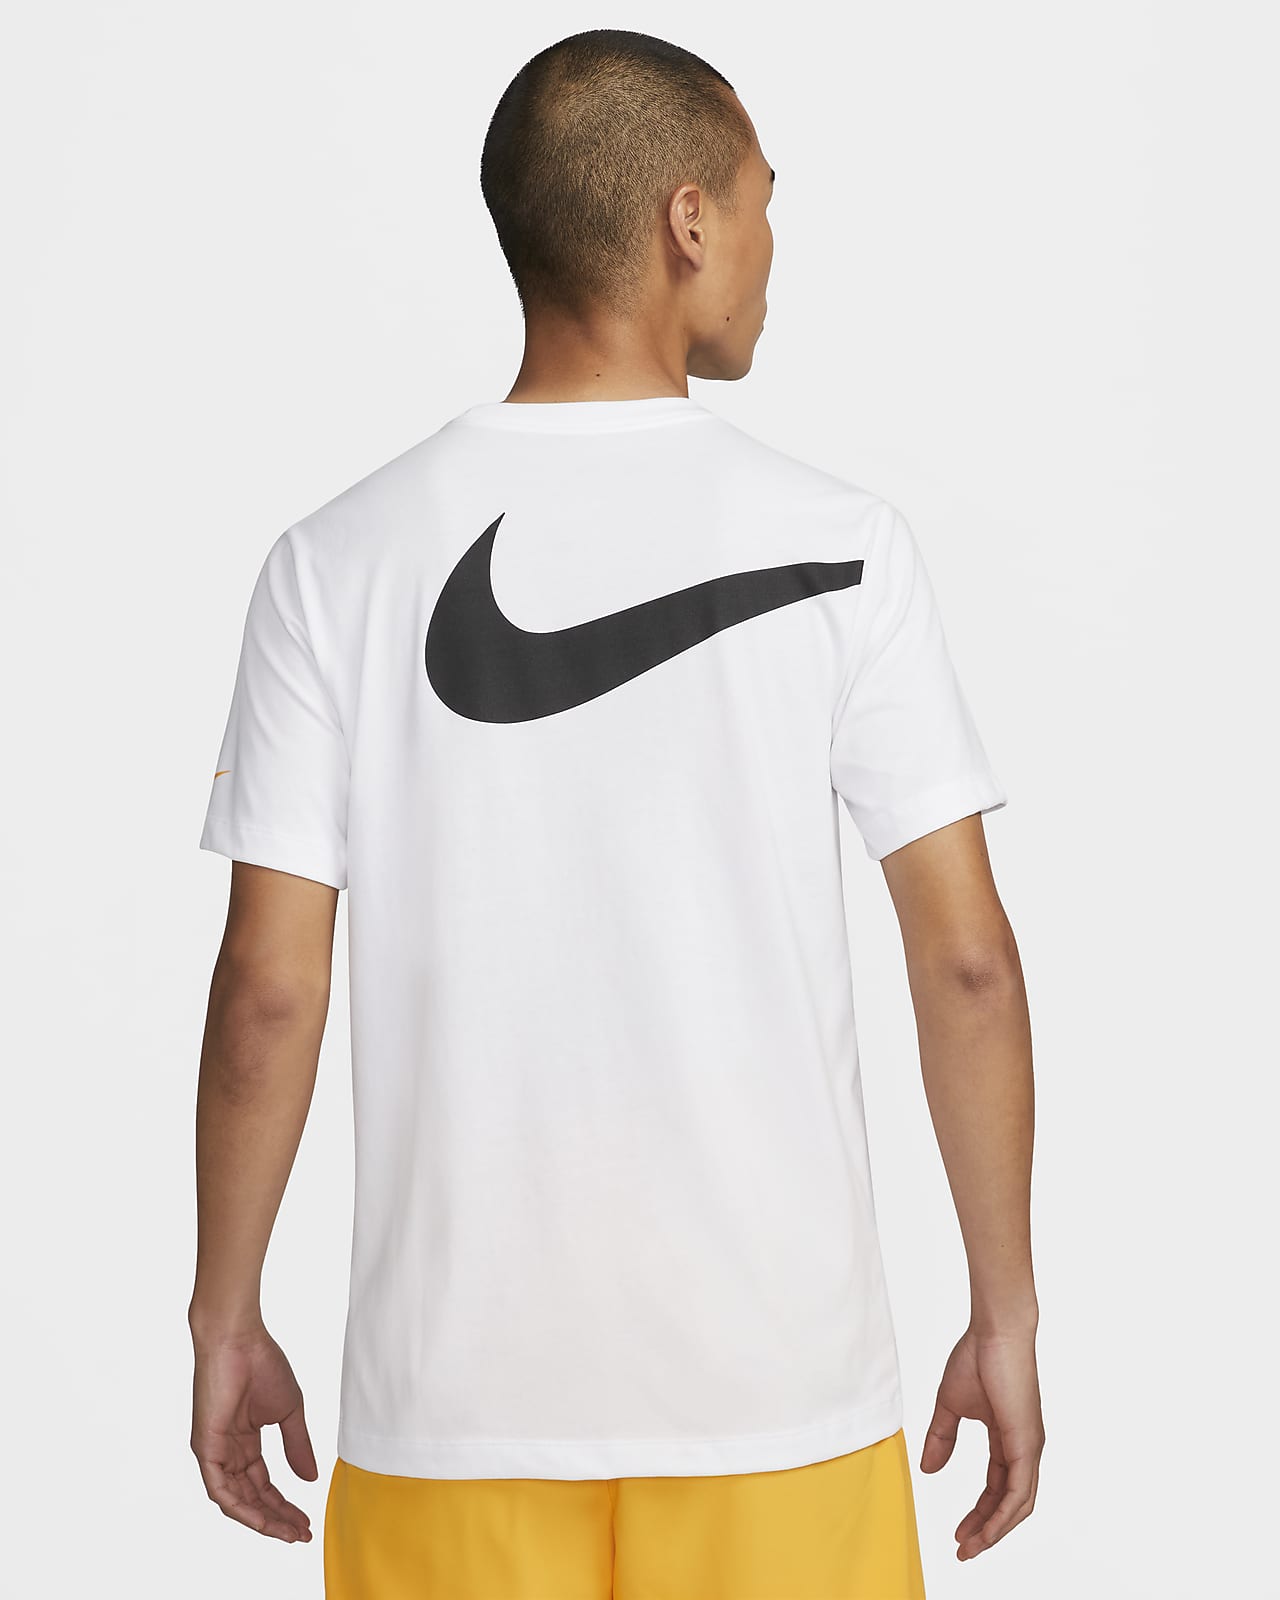 Nike Dri-Fit Men'S Training T-Shirt. Nike Vn